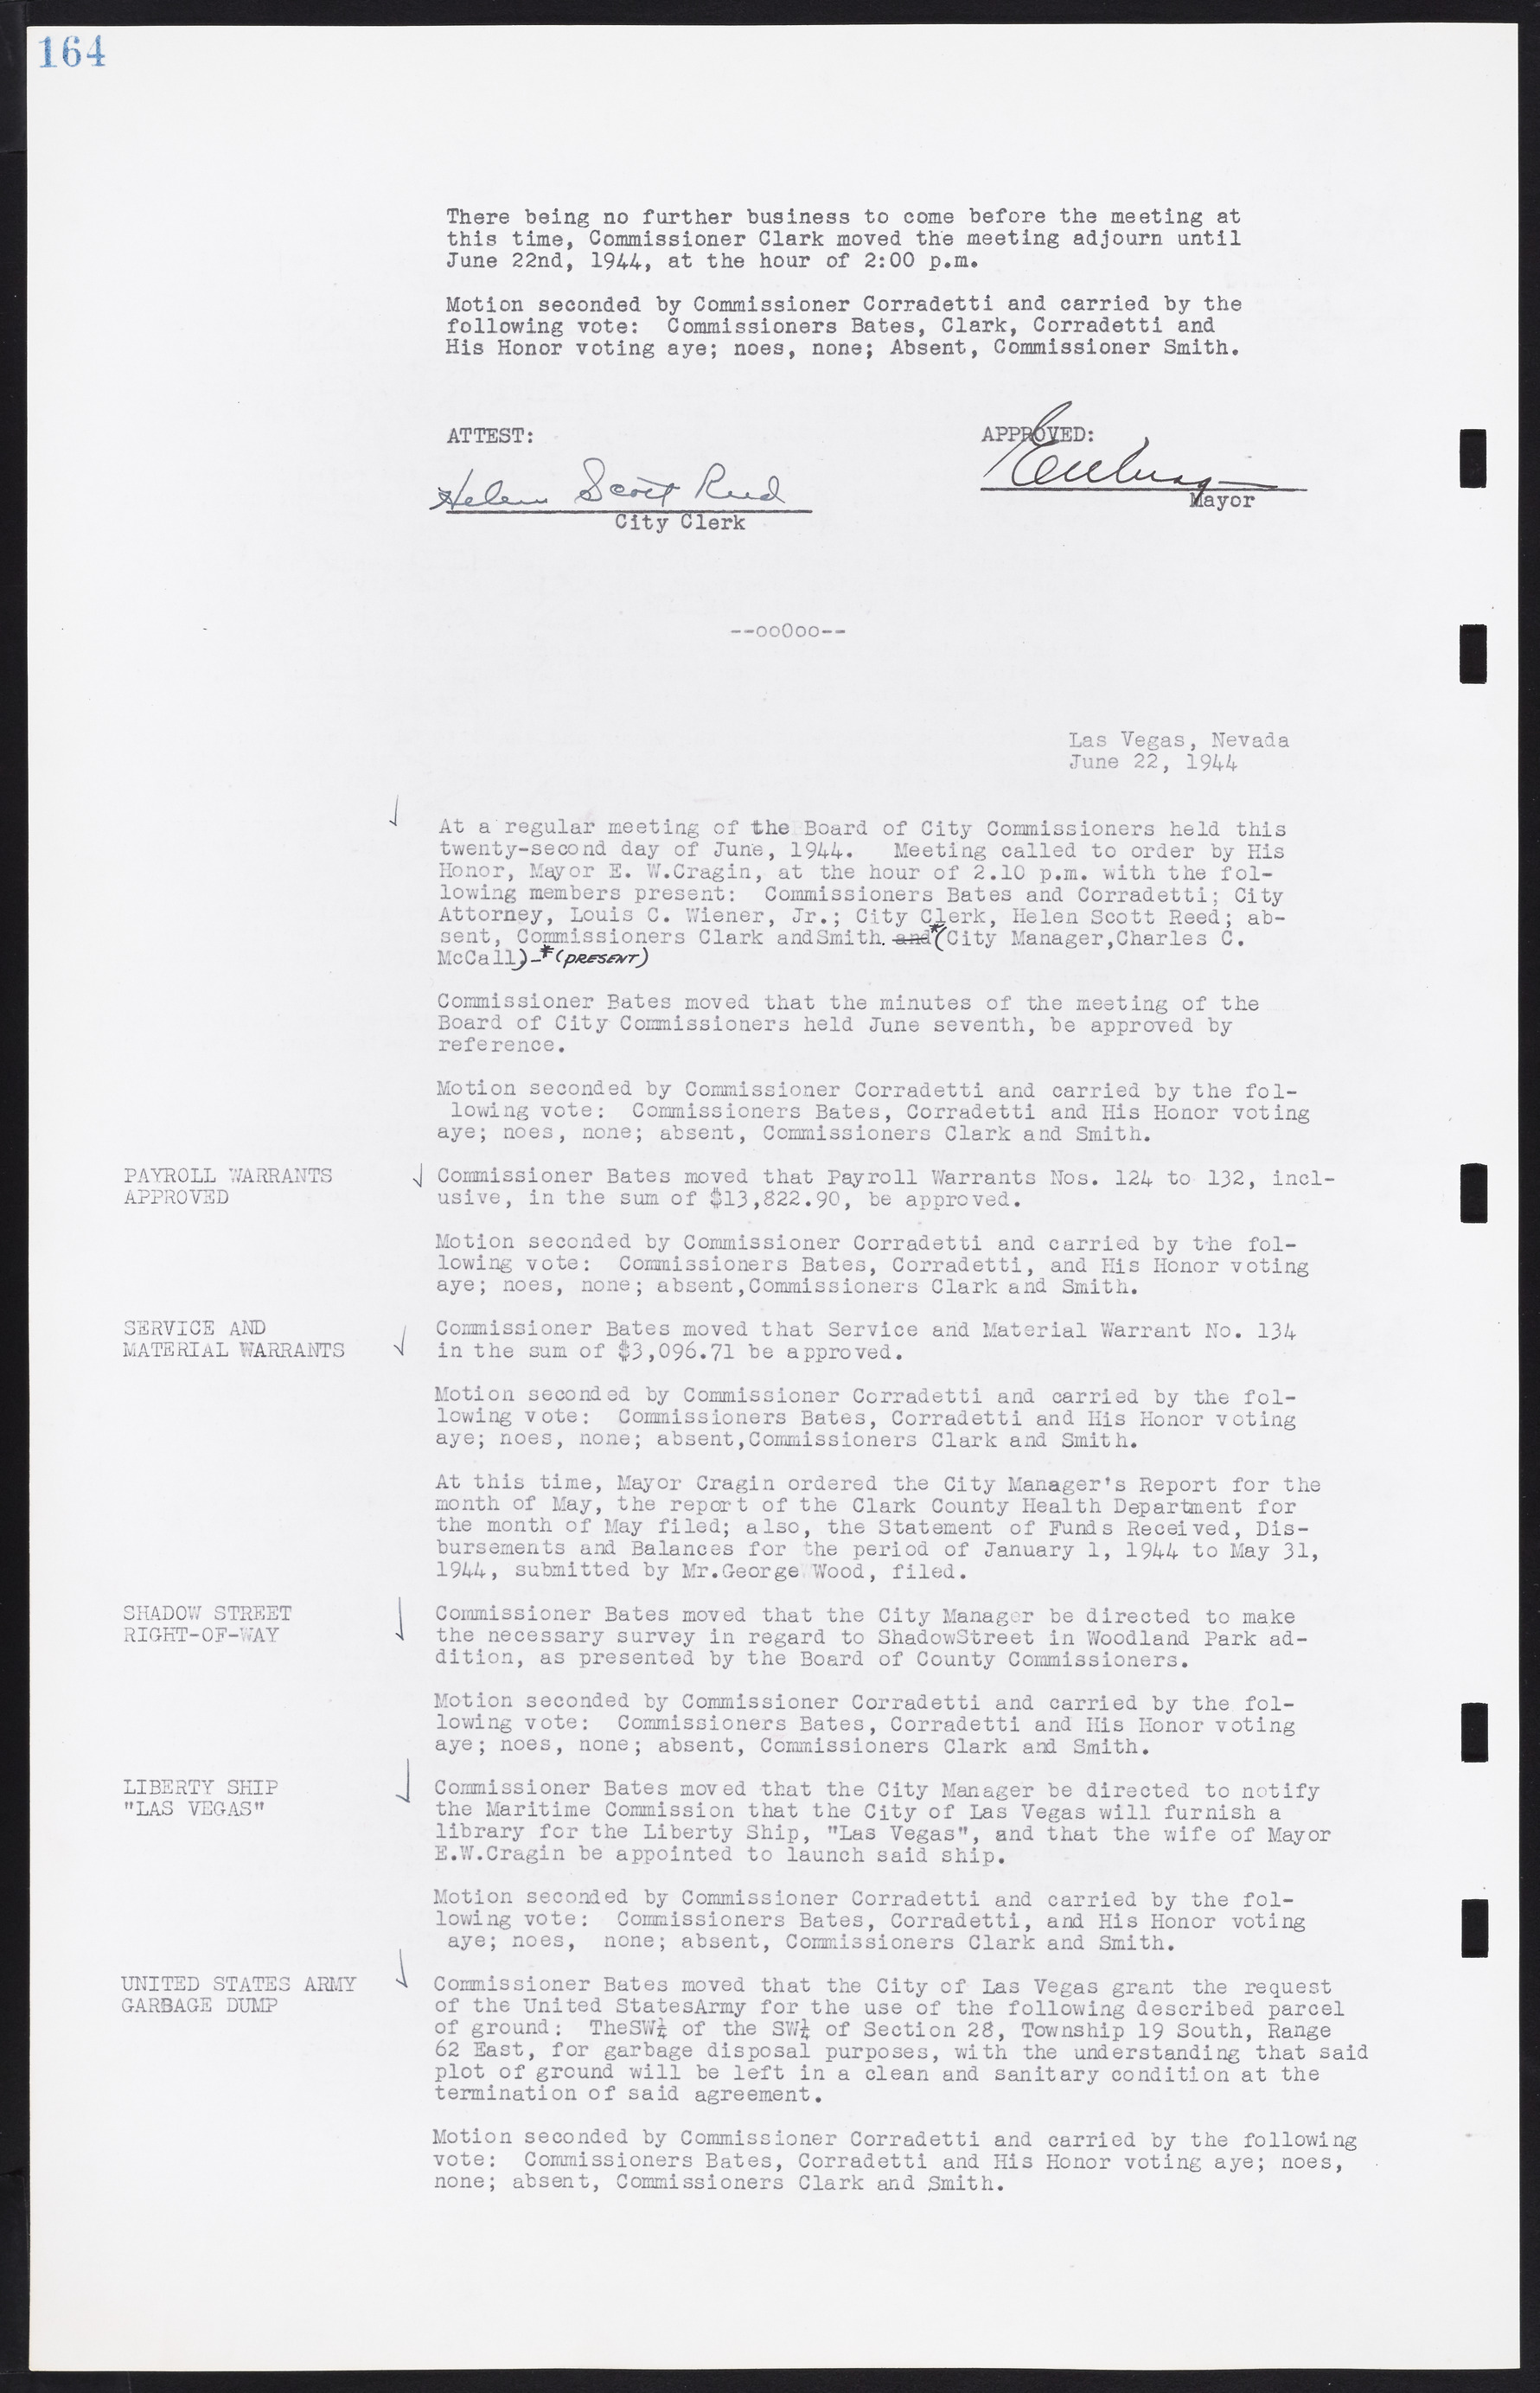 Las Vegas City Commission Minutes, August 11, 1942 to December 30, 1946, lvc000005-181